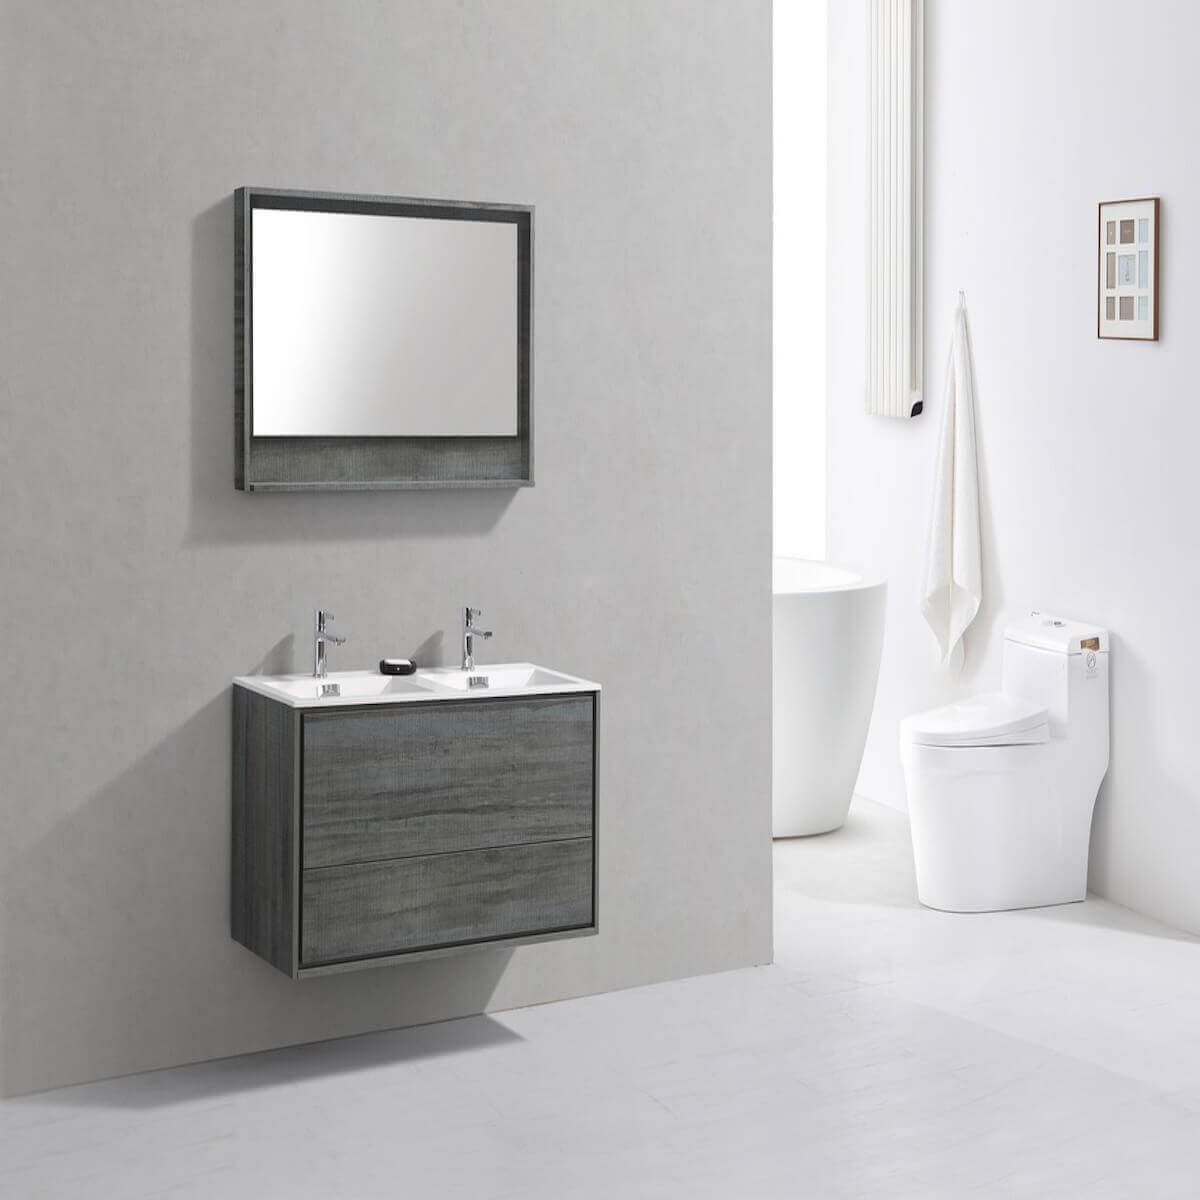 KubeBath DeLusso 48" Ocean Gray Wall Mount Double Vanity DL48D-BE in Bathroom #finish_ocean gray